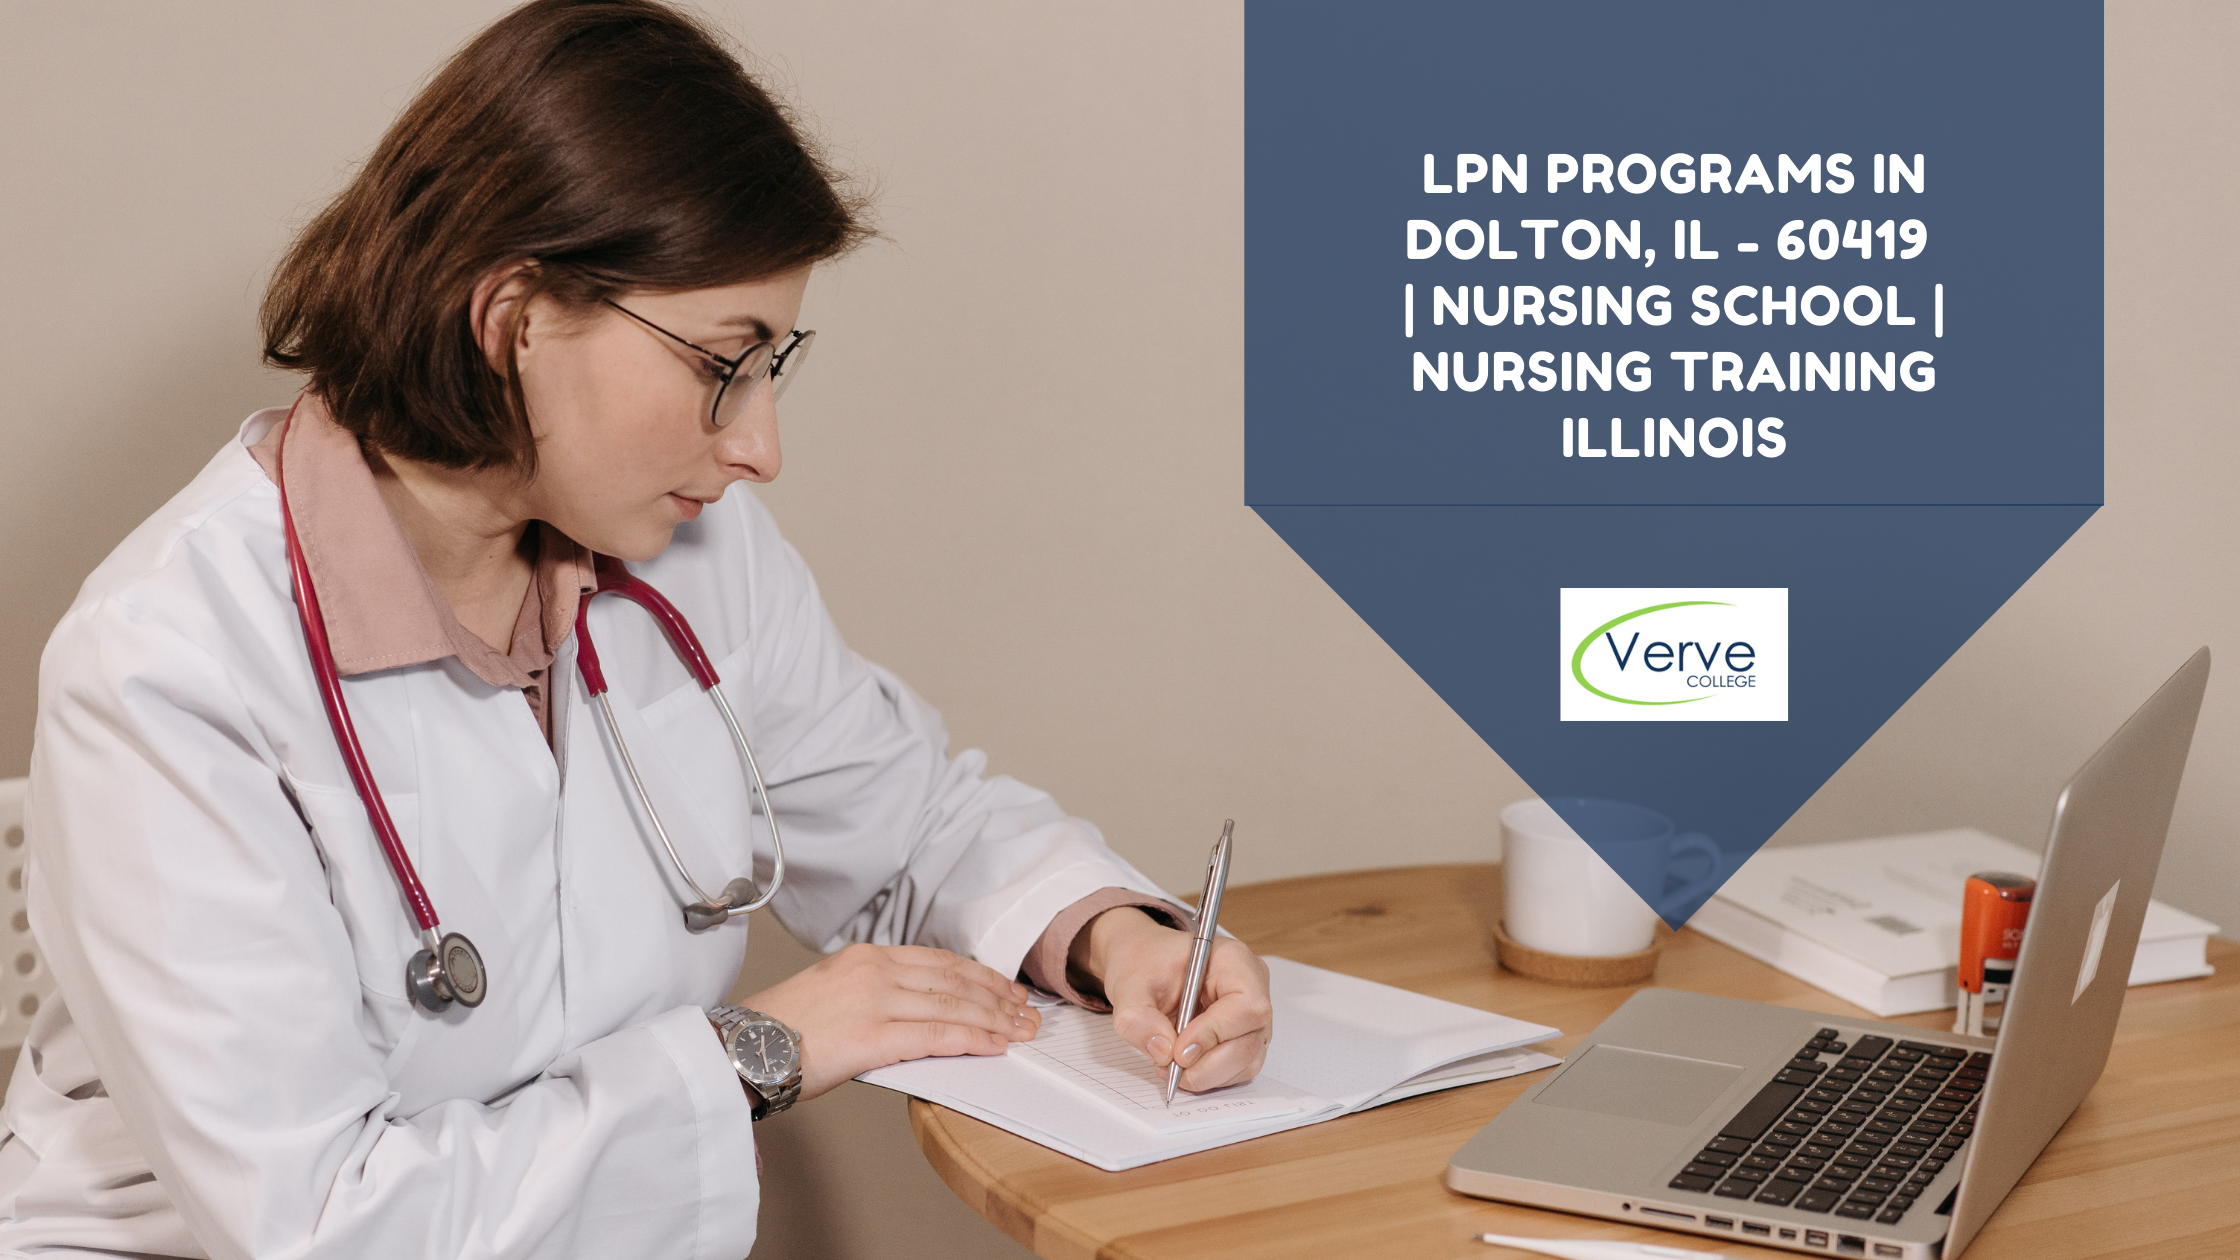 LPN Programs in Dolton, IL – 60419 | Nursing School | Nursing Training Illinois